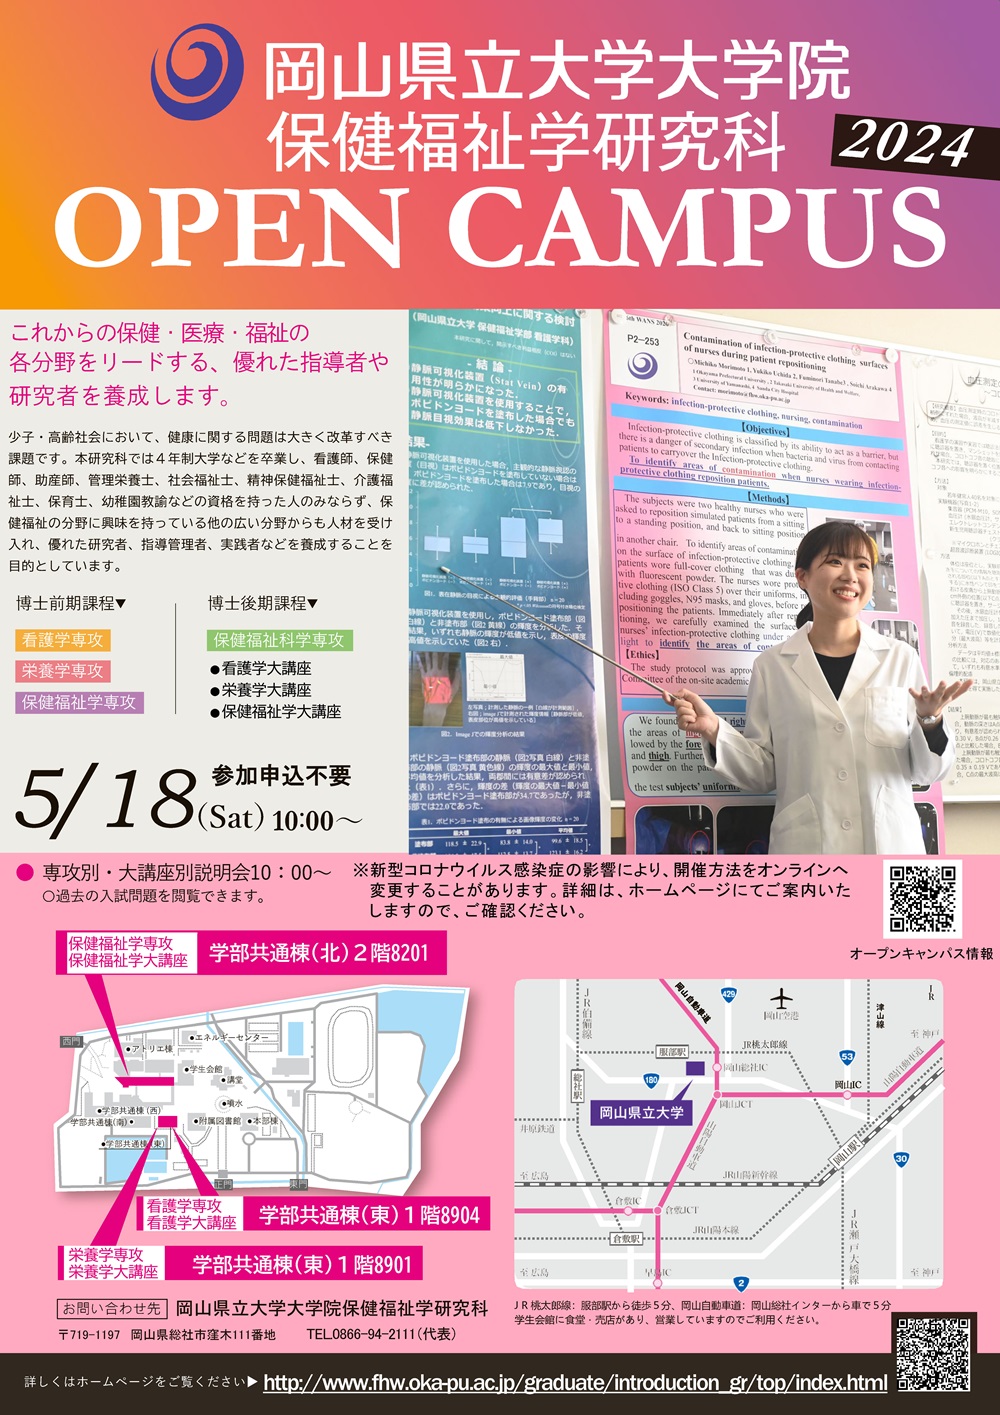 【大学院】保健福祉学研究科オープンキャンパス2024を開催します